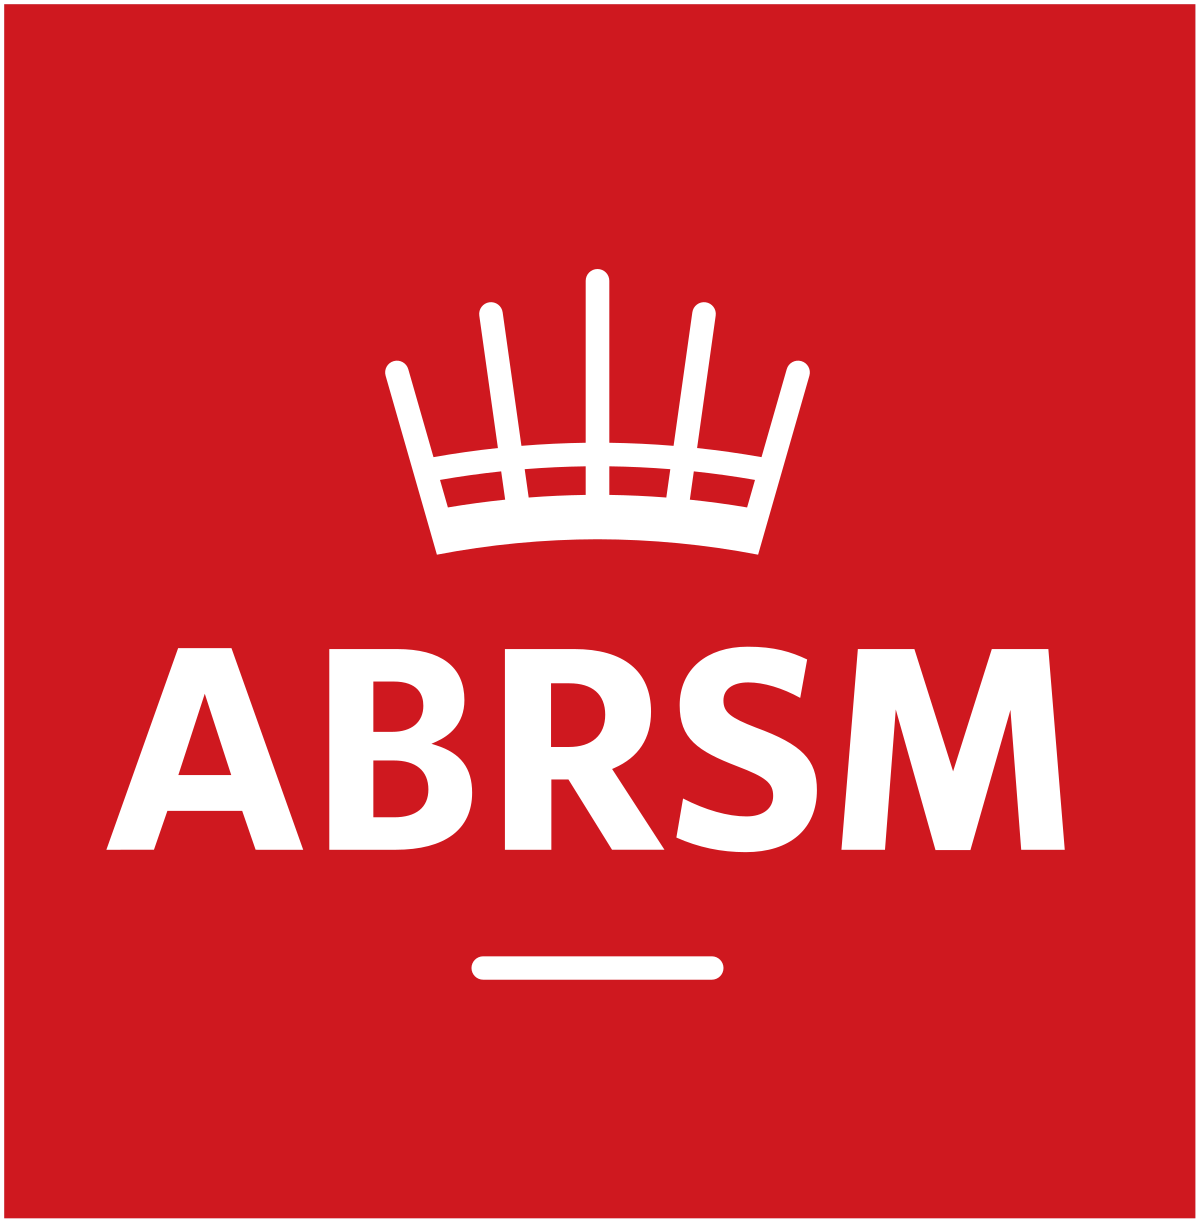 ABRSM logo